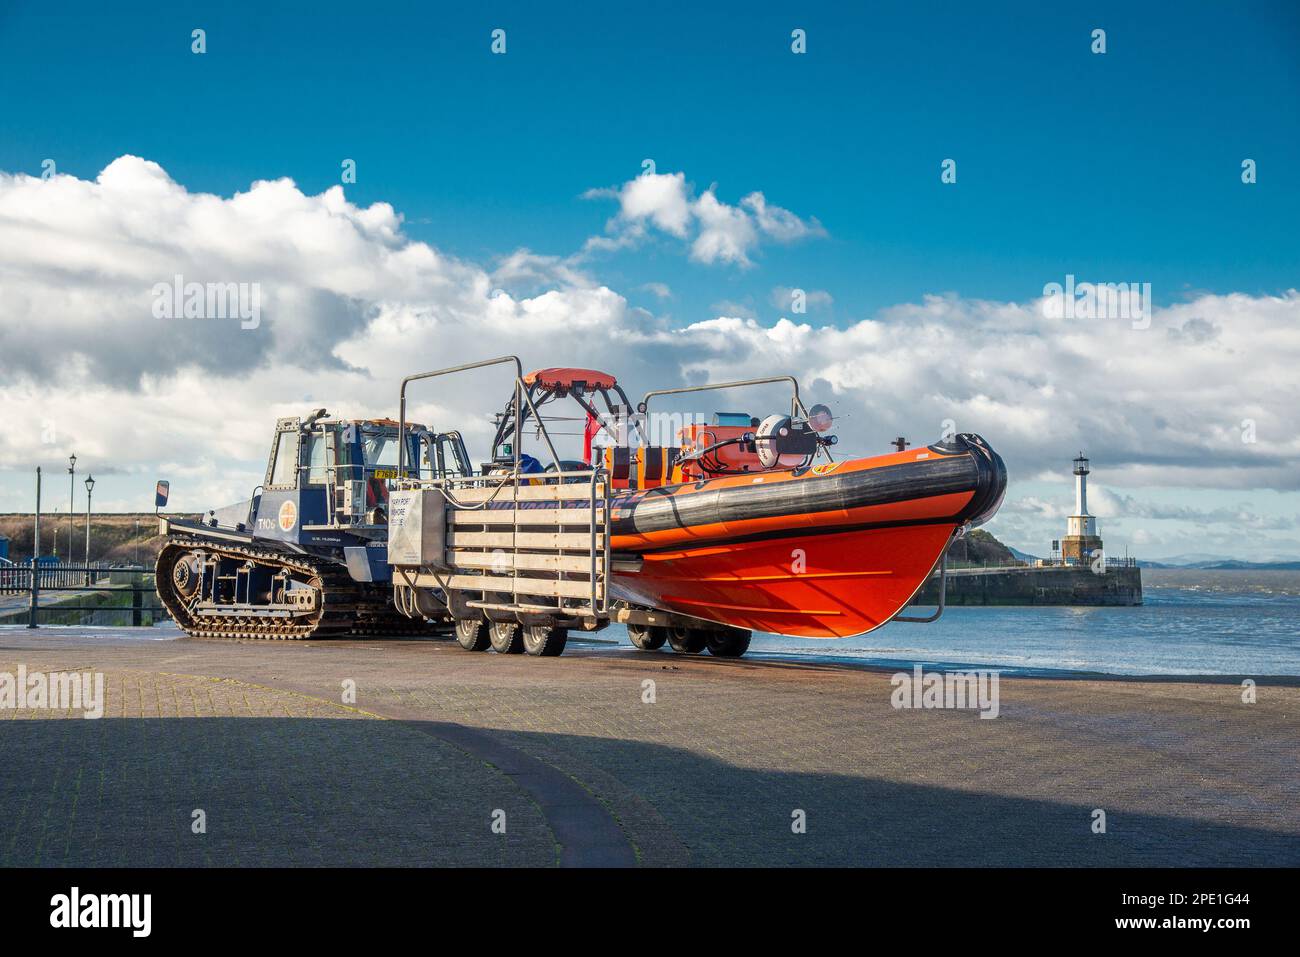 La barca di salvataggio di Maryport Rescue, un'alluvione indipendente, Swift Water, servizio di ricerca e salvataggio, Maryport, Cumbria, Regno Unito Foto Stock